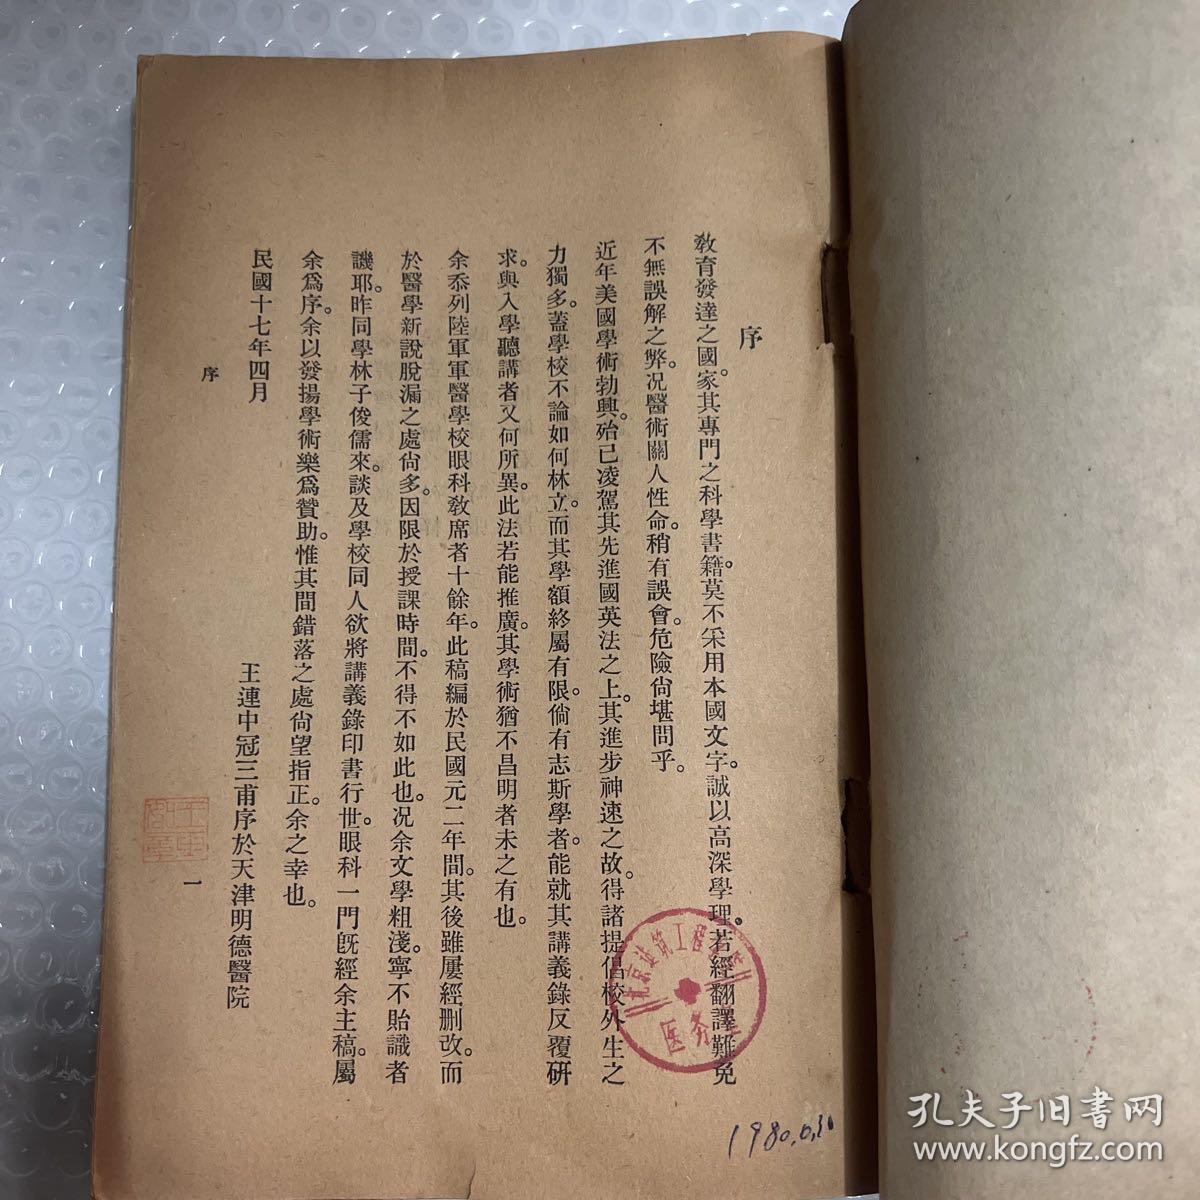 民国十七年 北京陆军军医学校 眼科学 上下两册  医学士 王连中    有印章